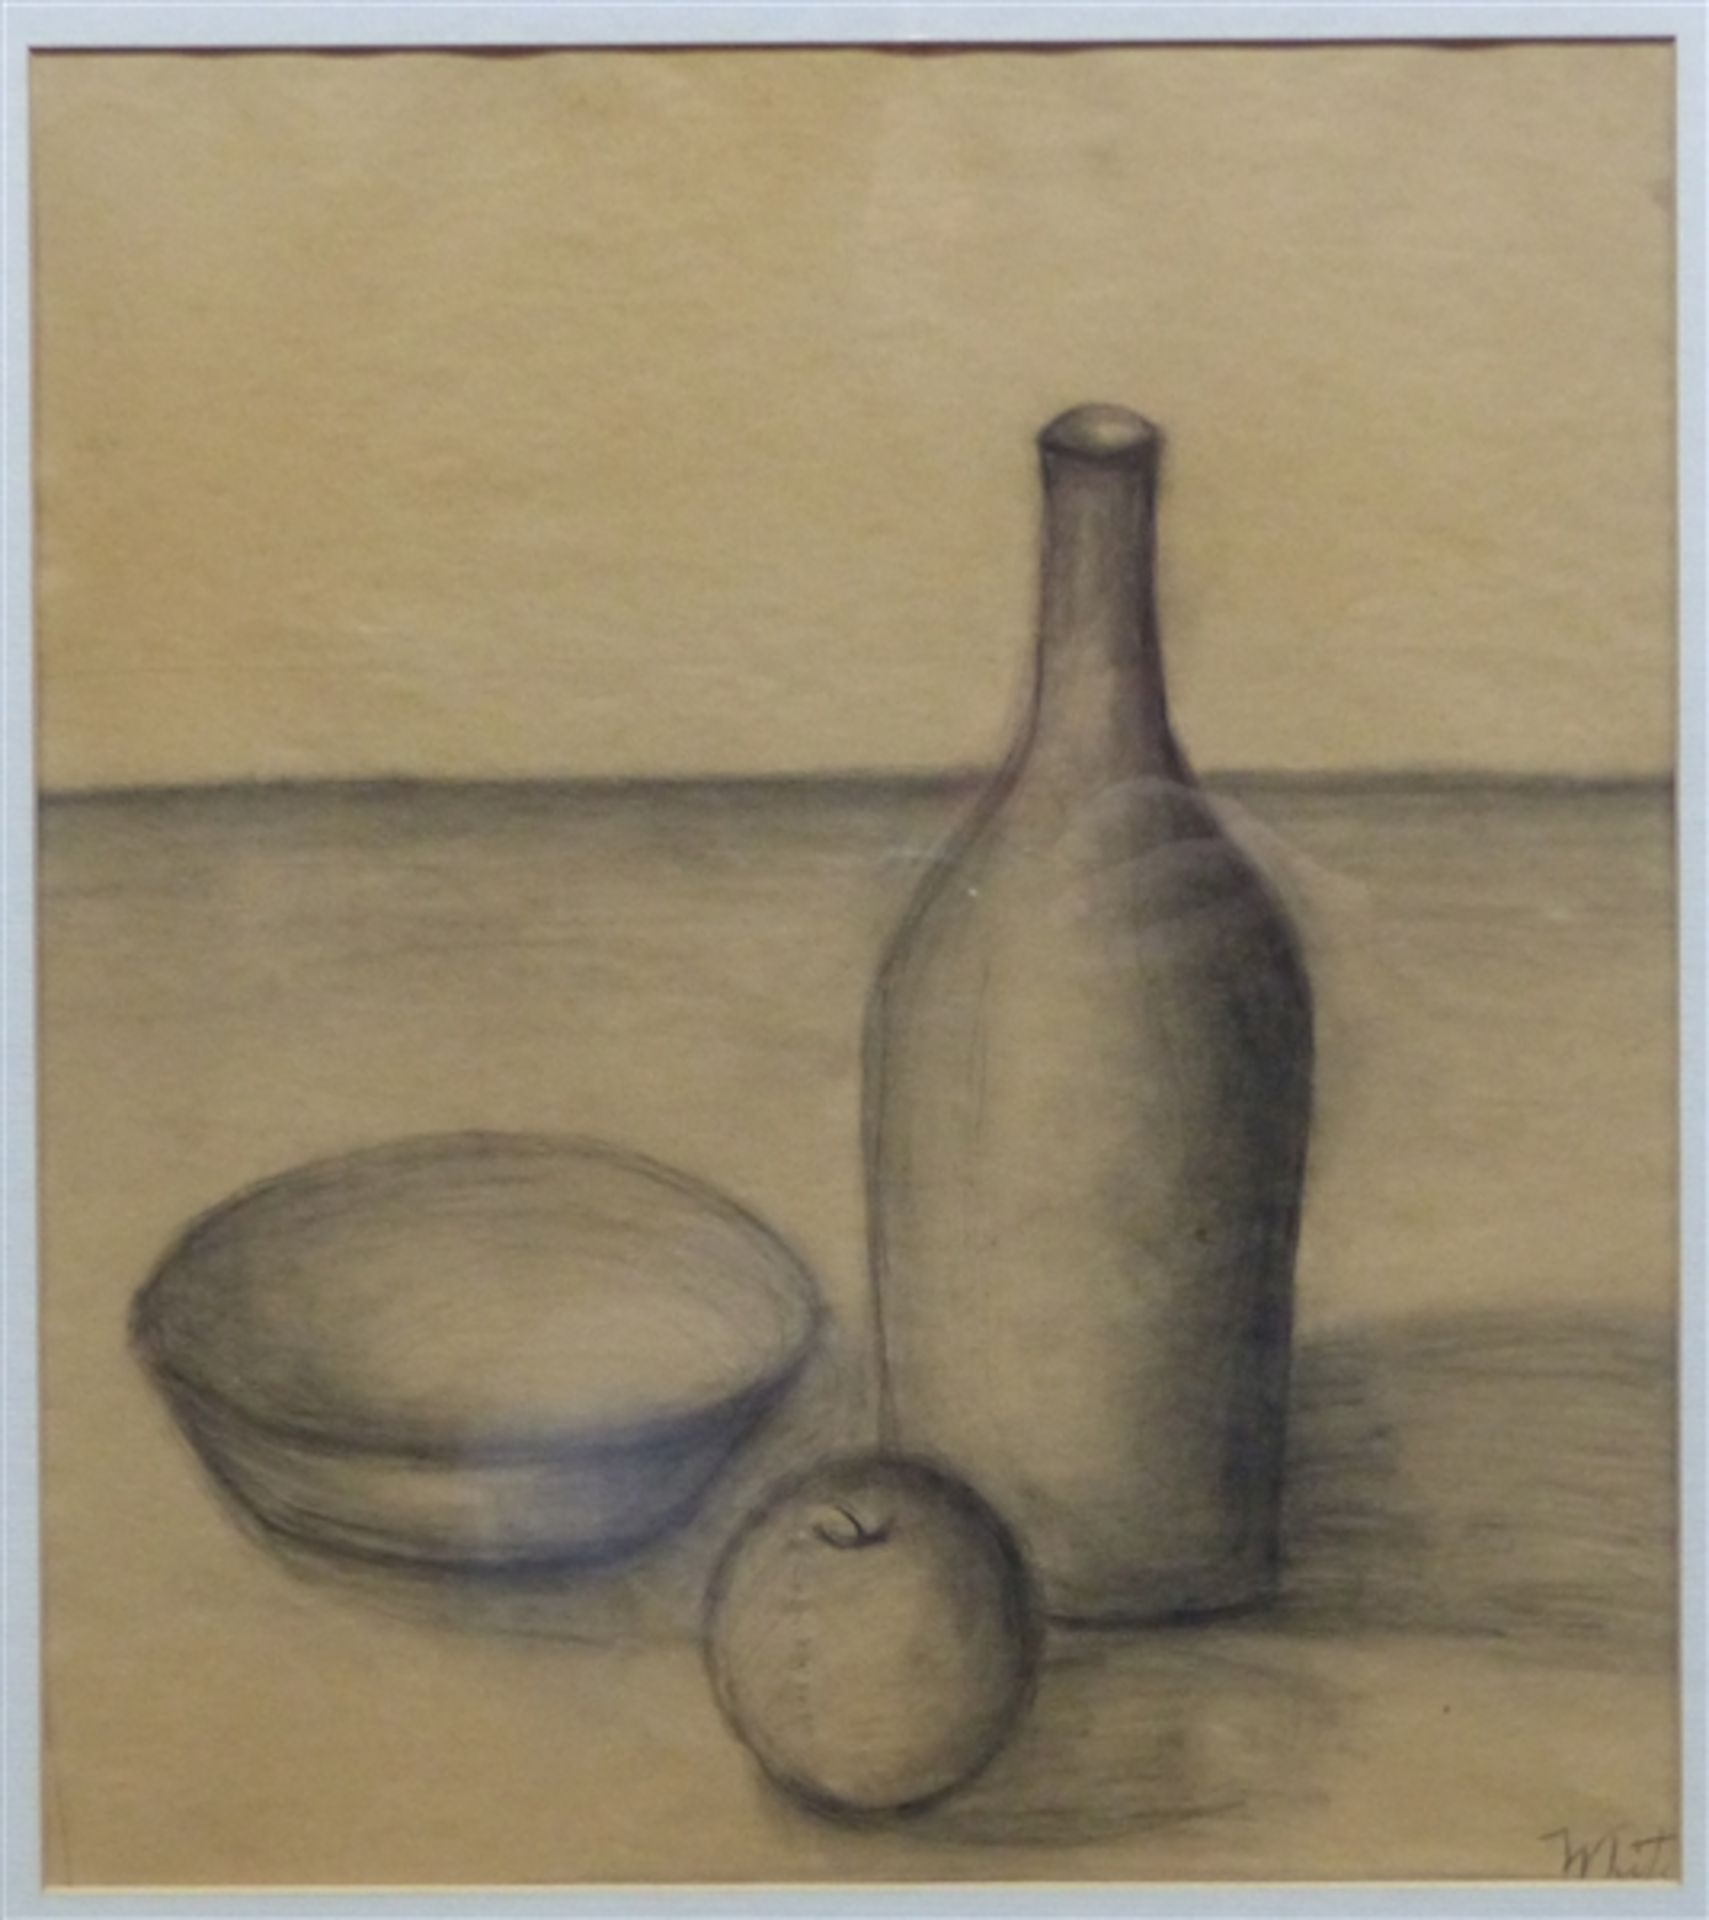 White Bleistiftzeichnung auf Papier, Stillleben mit Flasche, Schale und Apfel, rechts unten